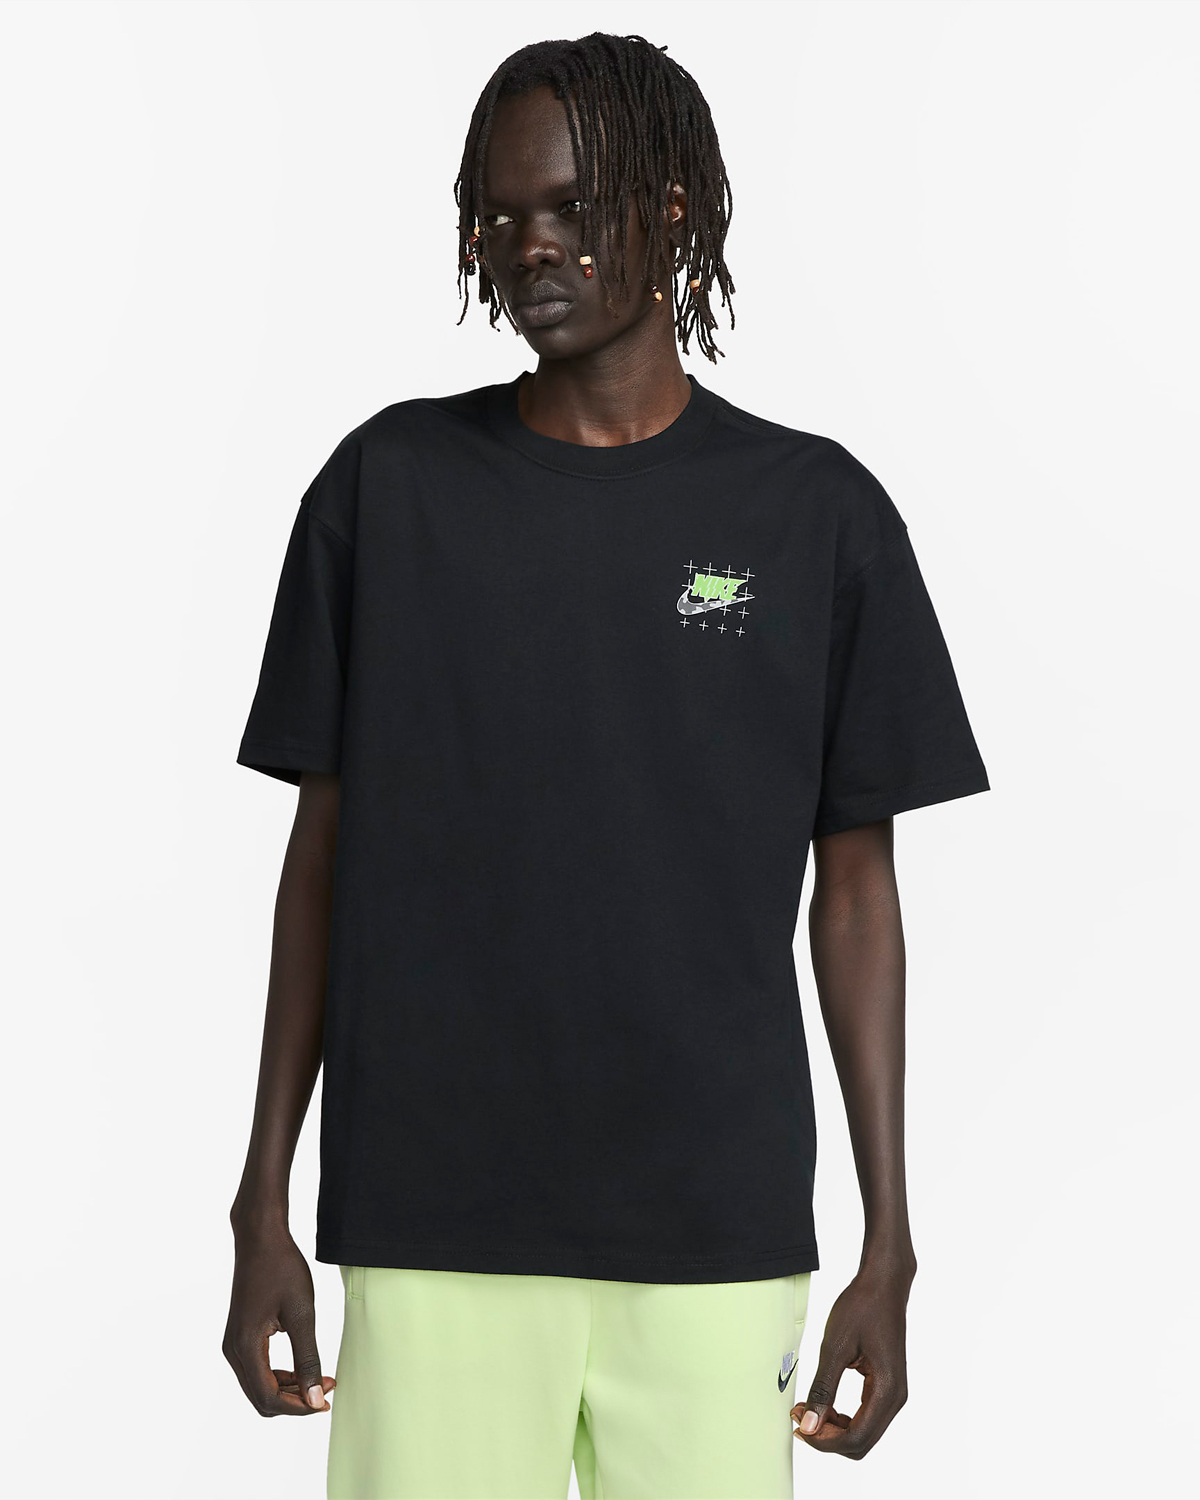 Nike-Sportswear-Air-Max-T-Shirt-Black-Green-1